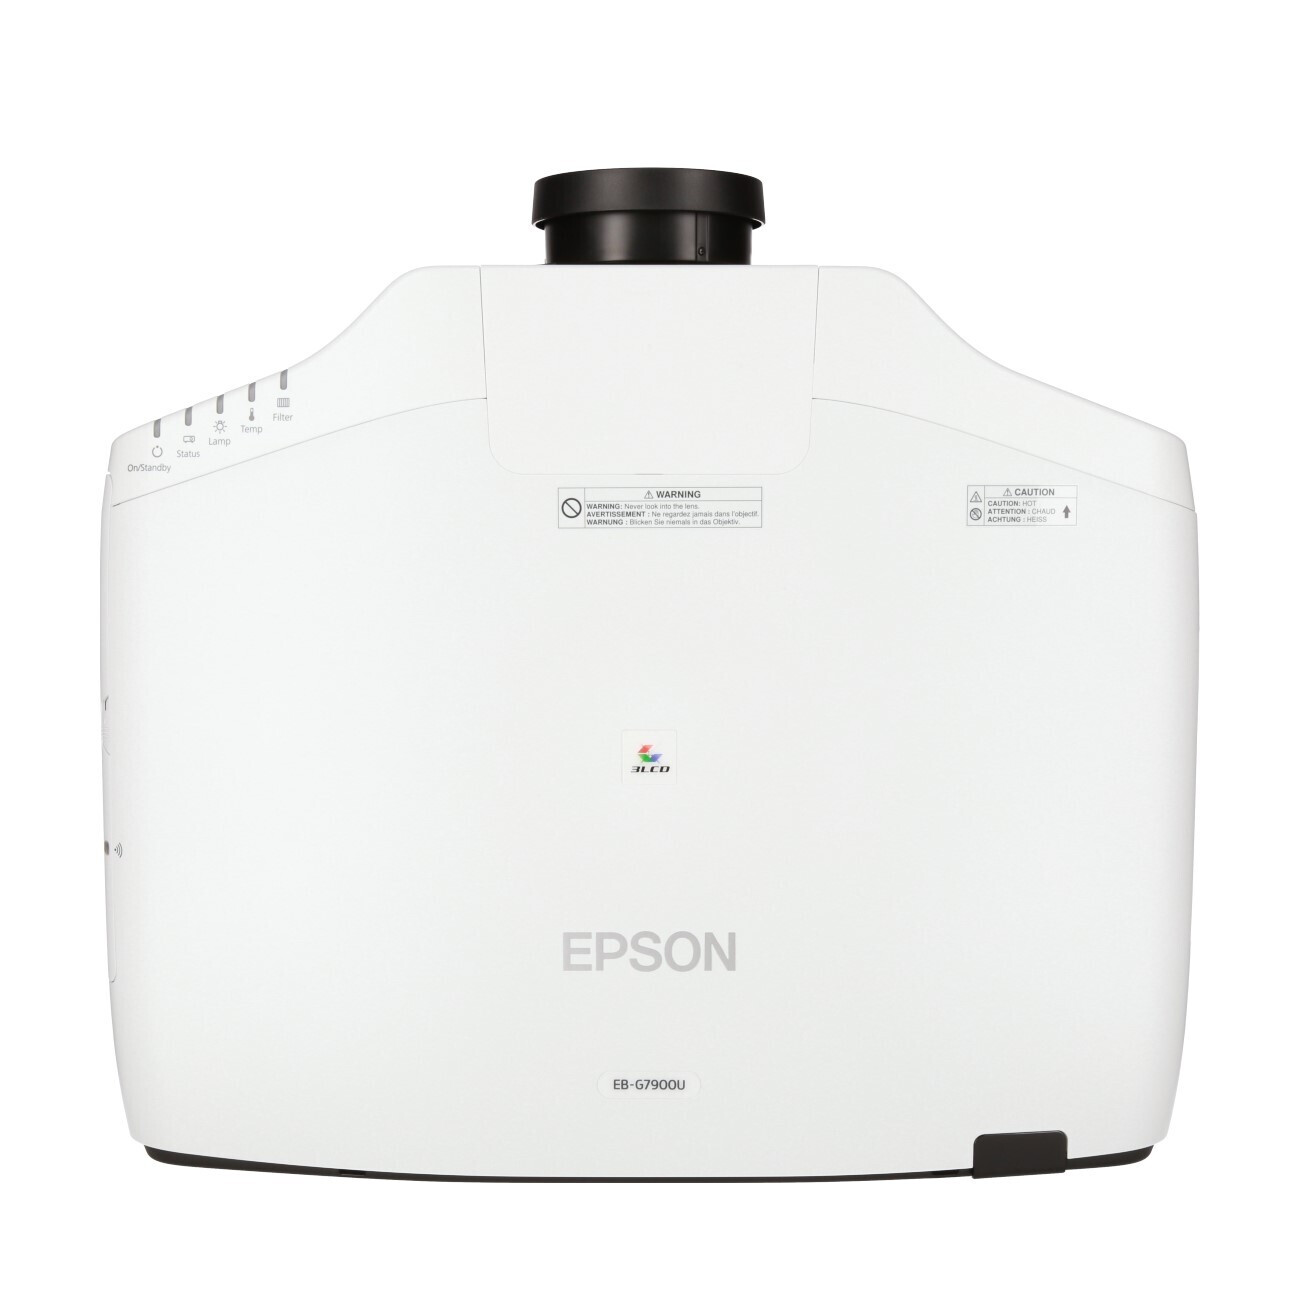 Vorschau: Epson EB-G7900U Installationsbeamer mit 7000 ANSI-Lumen und WUXGA